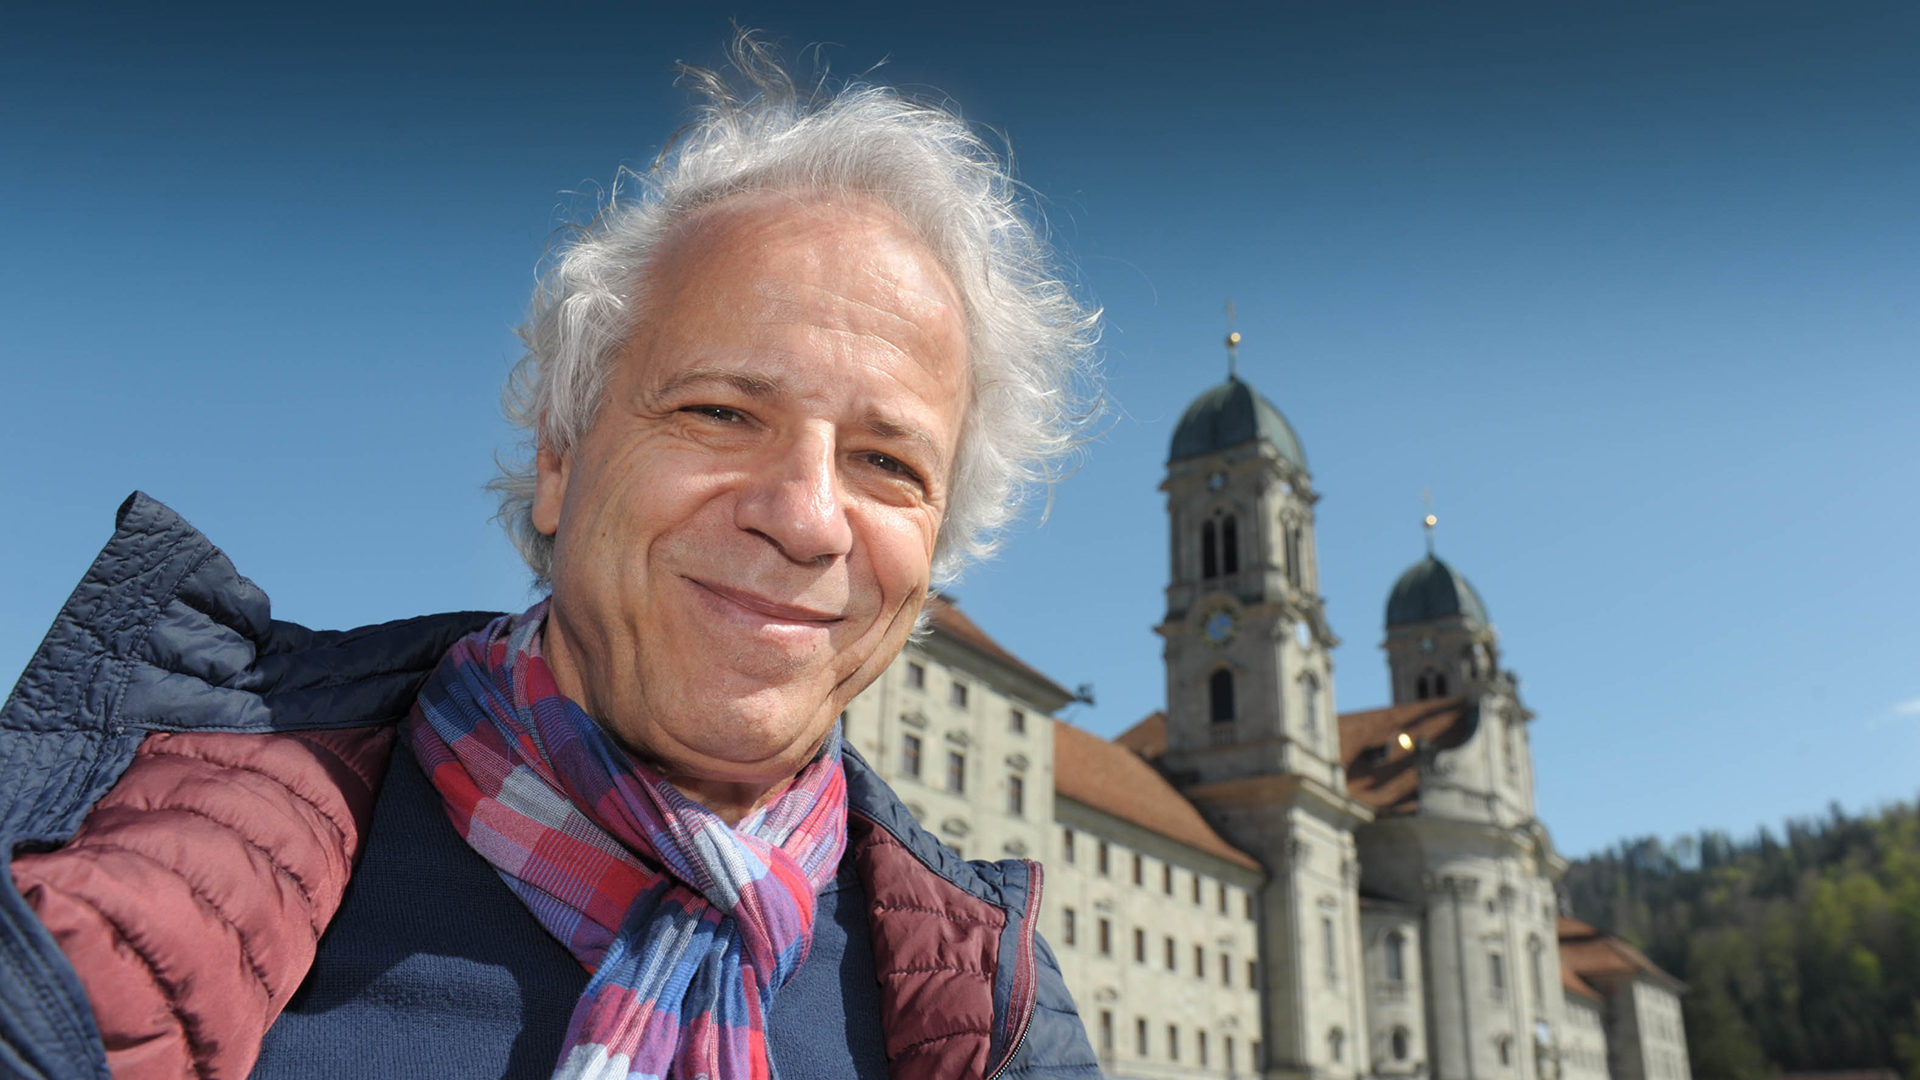 Unermüdlicher Kämpfer: Werner Ruch sammelte Geld für einen hindernisfreien Klosterplatz.